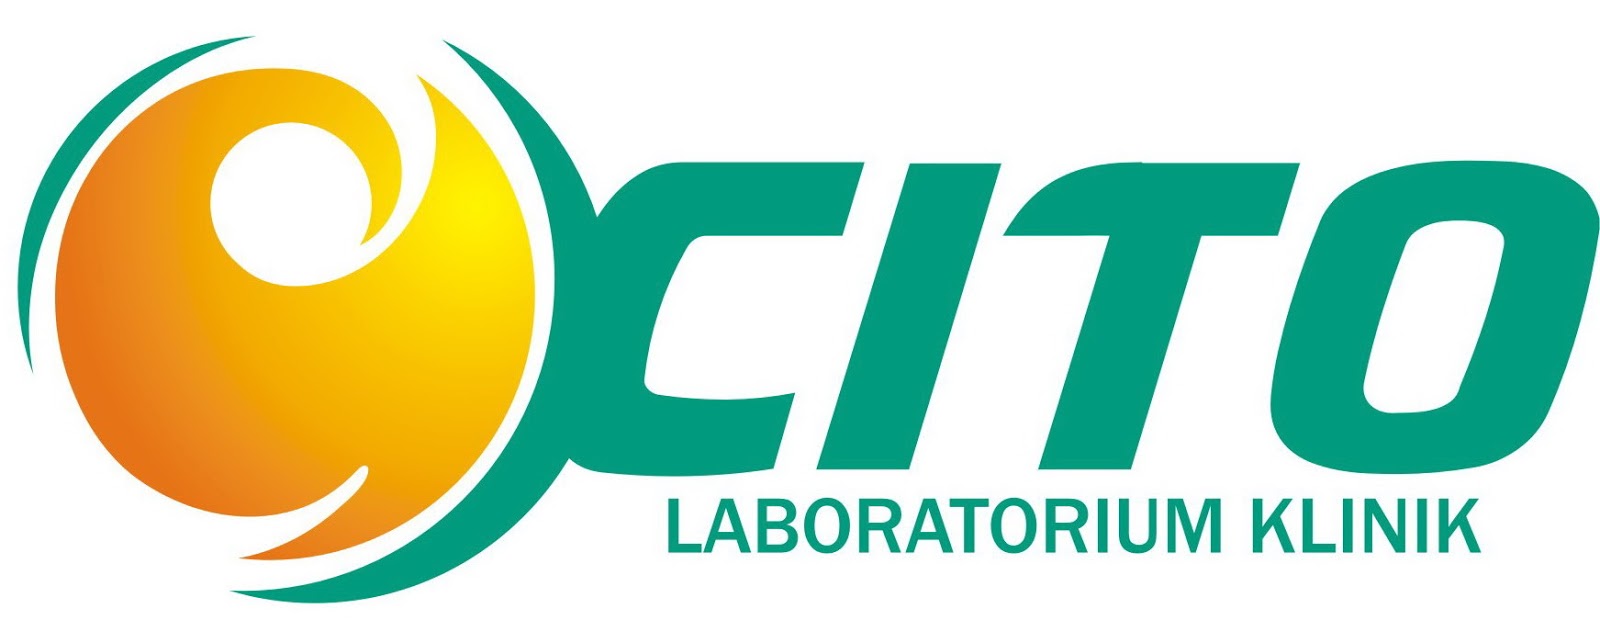 Lowongan Kerja di Laboratorium Klinik CITO - Semarang ...